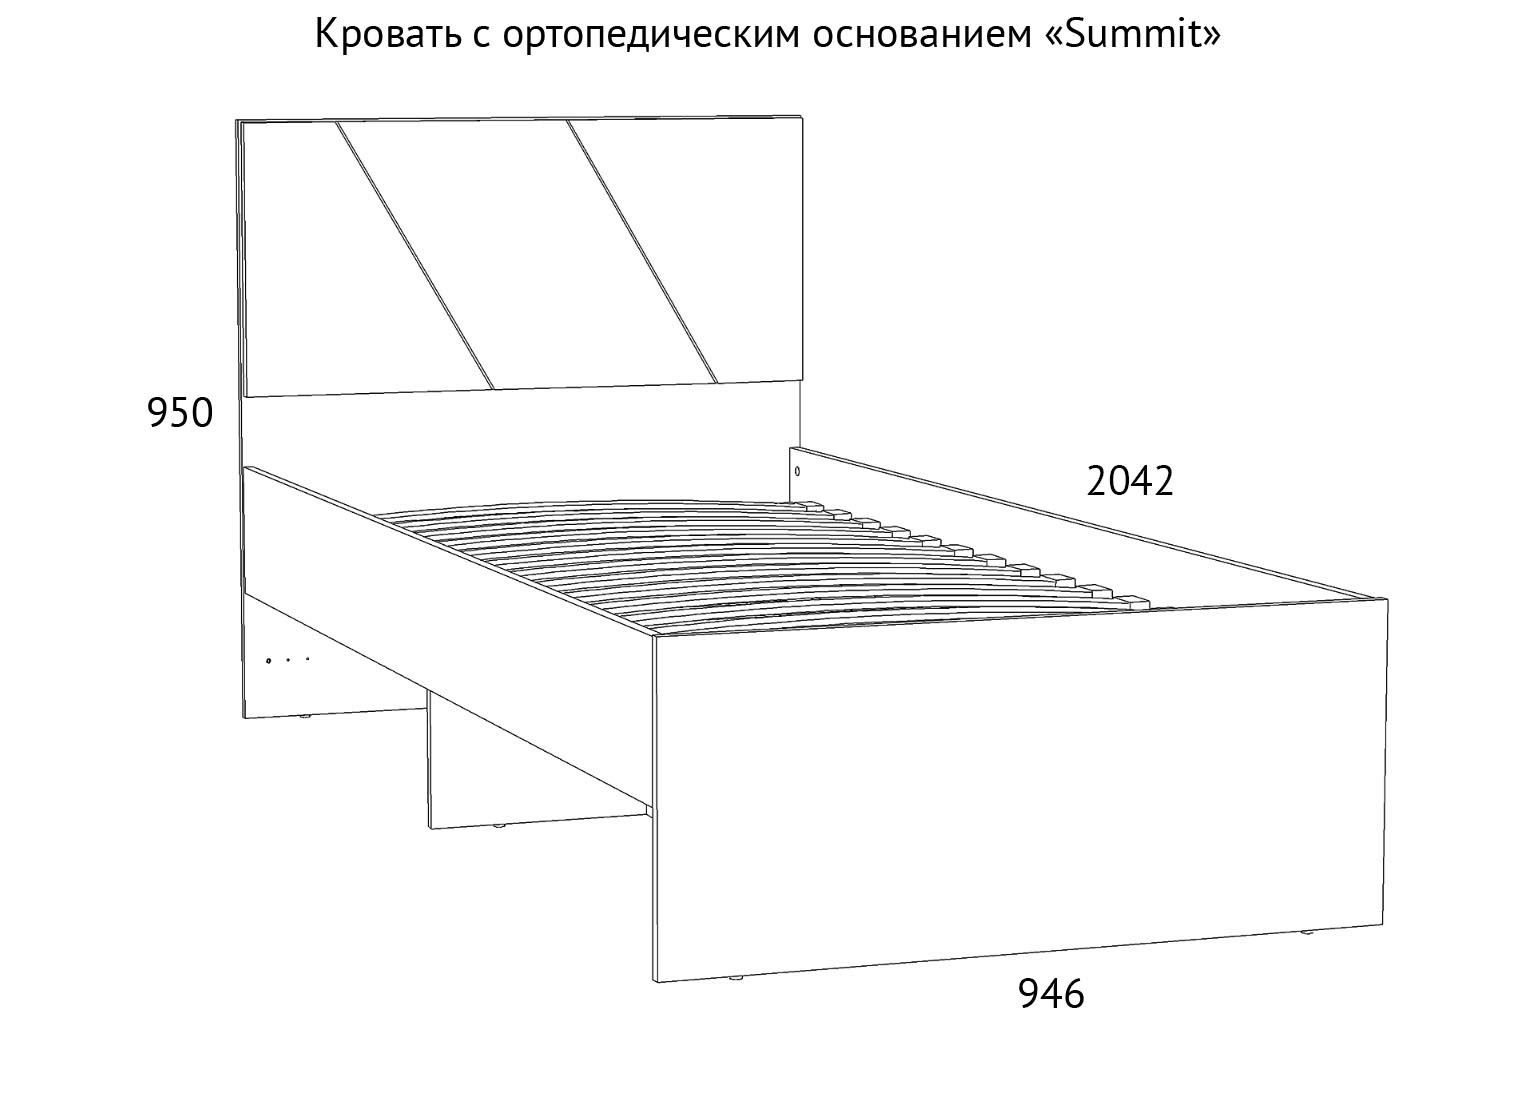 НМ 041.53 Кровать детская Summit схема Мебель Краснодар